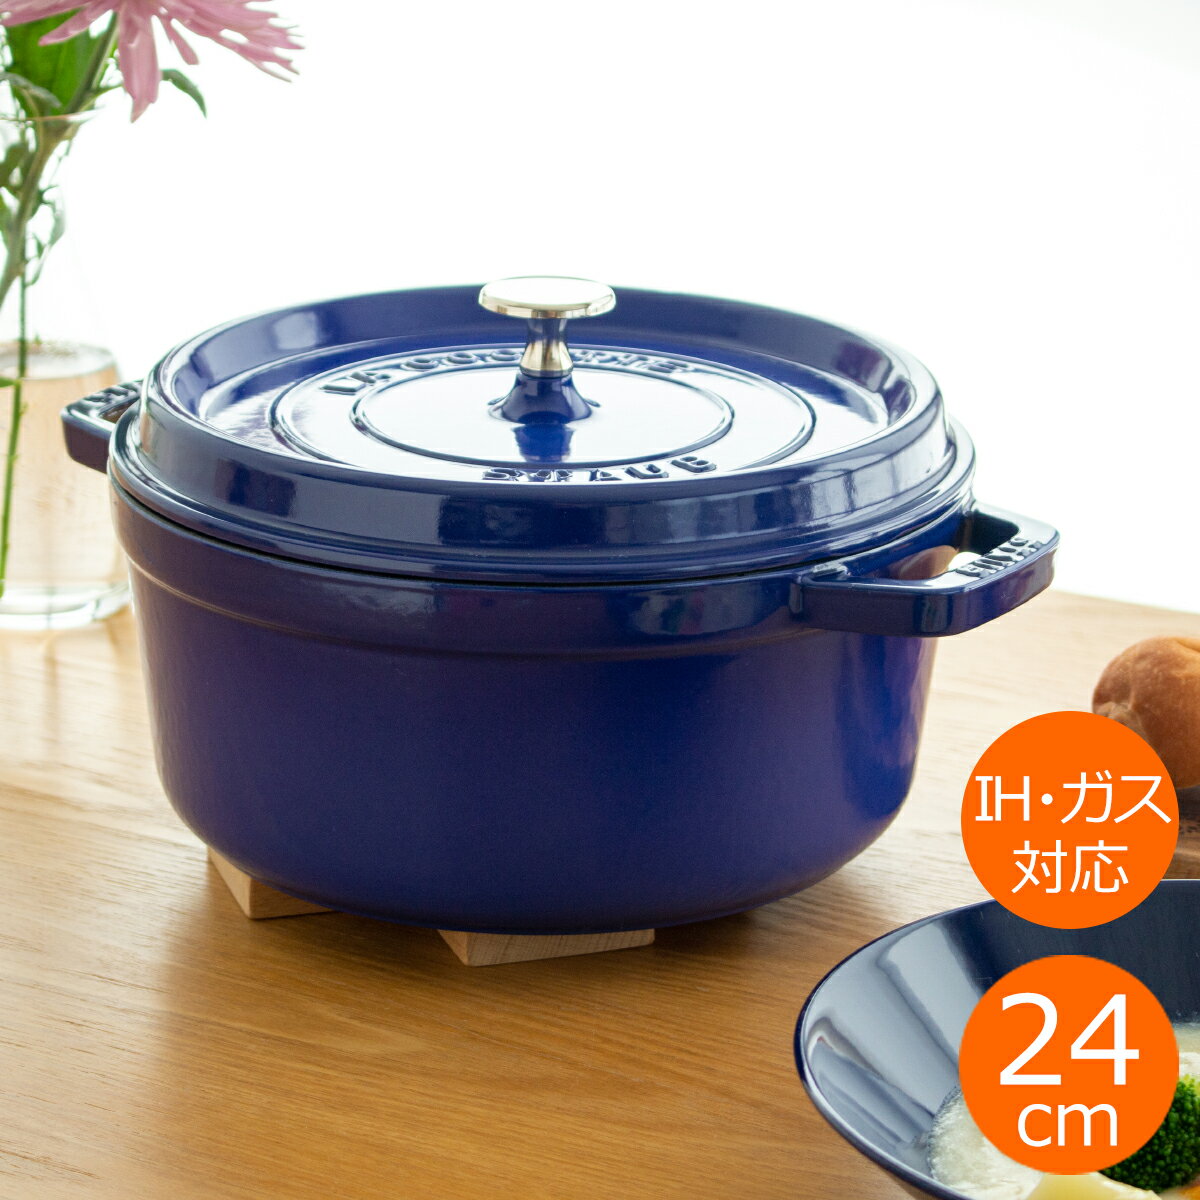 ピコ・ココット ストウブ 鍋 ピコ・ココット ラウンド 24cm ロイヤルブルー IH対応 生涯保証 日本正規品 STAUB ホーロー鍋 両手鍋 鋳物